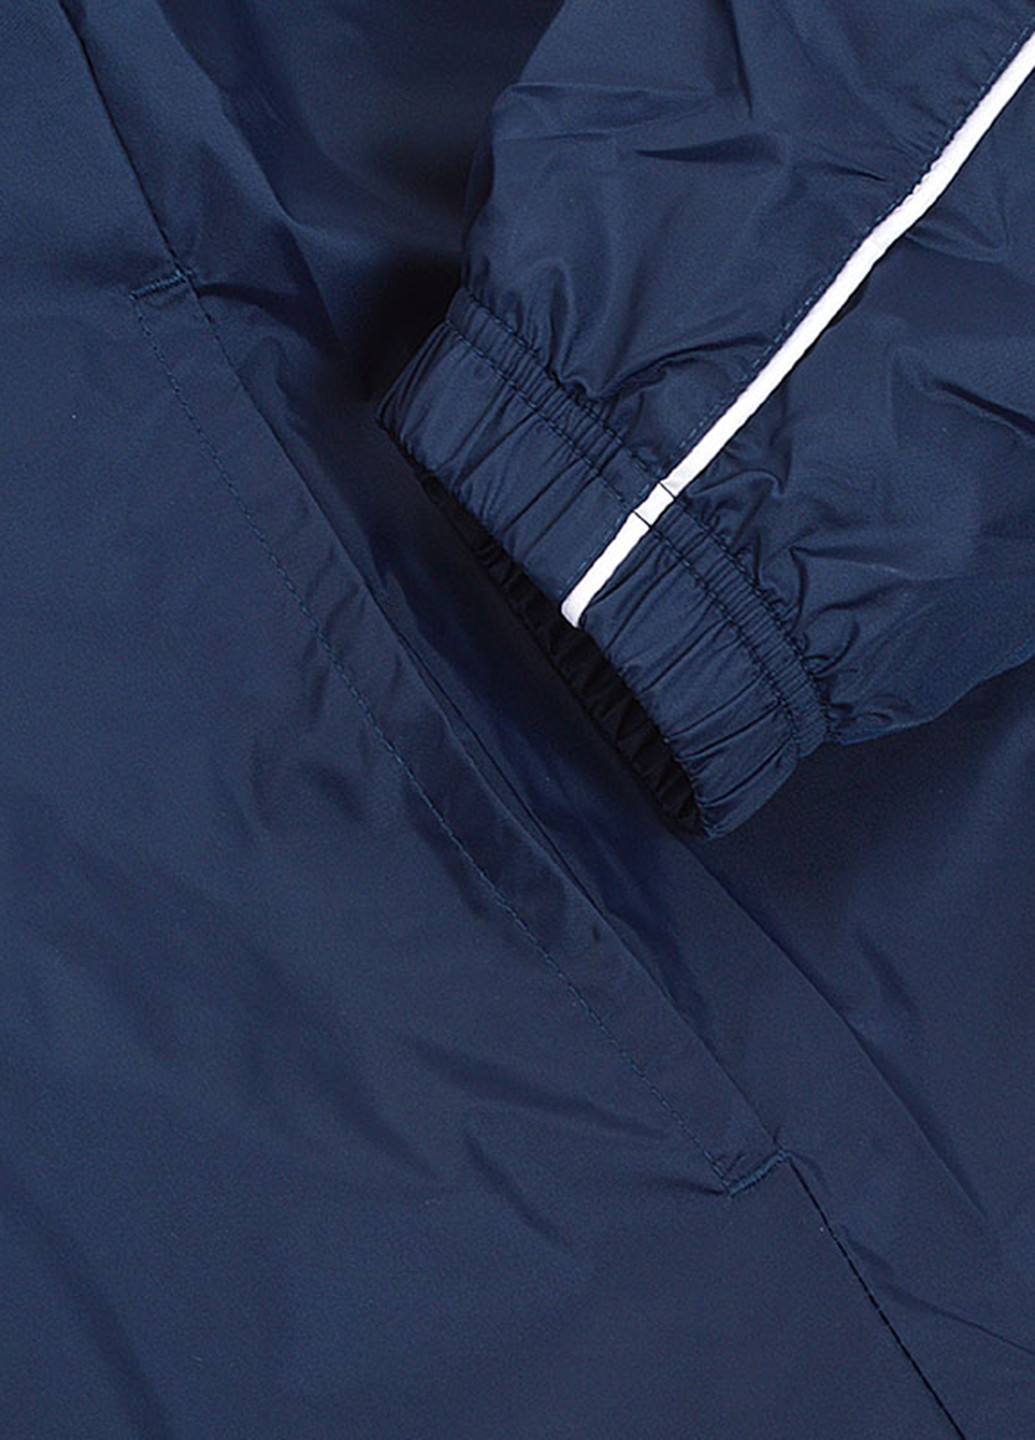 Темно-синій демісезонний костюм (олімпійка, брюки) брючний Nike M NSW SCE TRK SUIT WVN BASIC